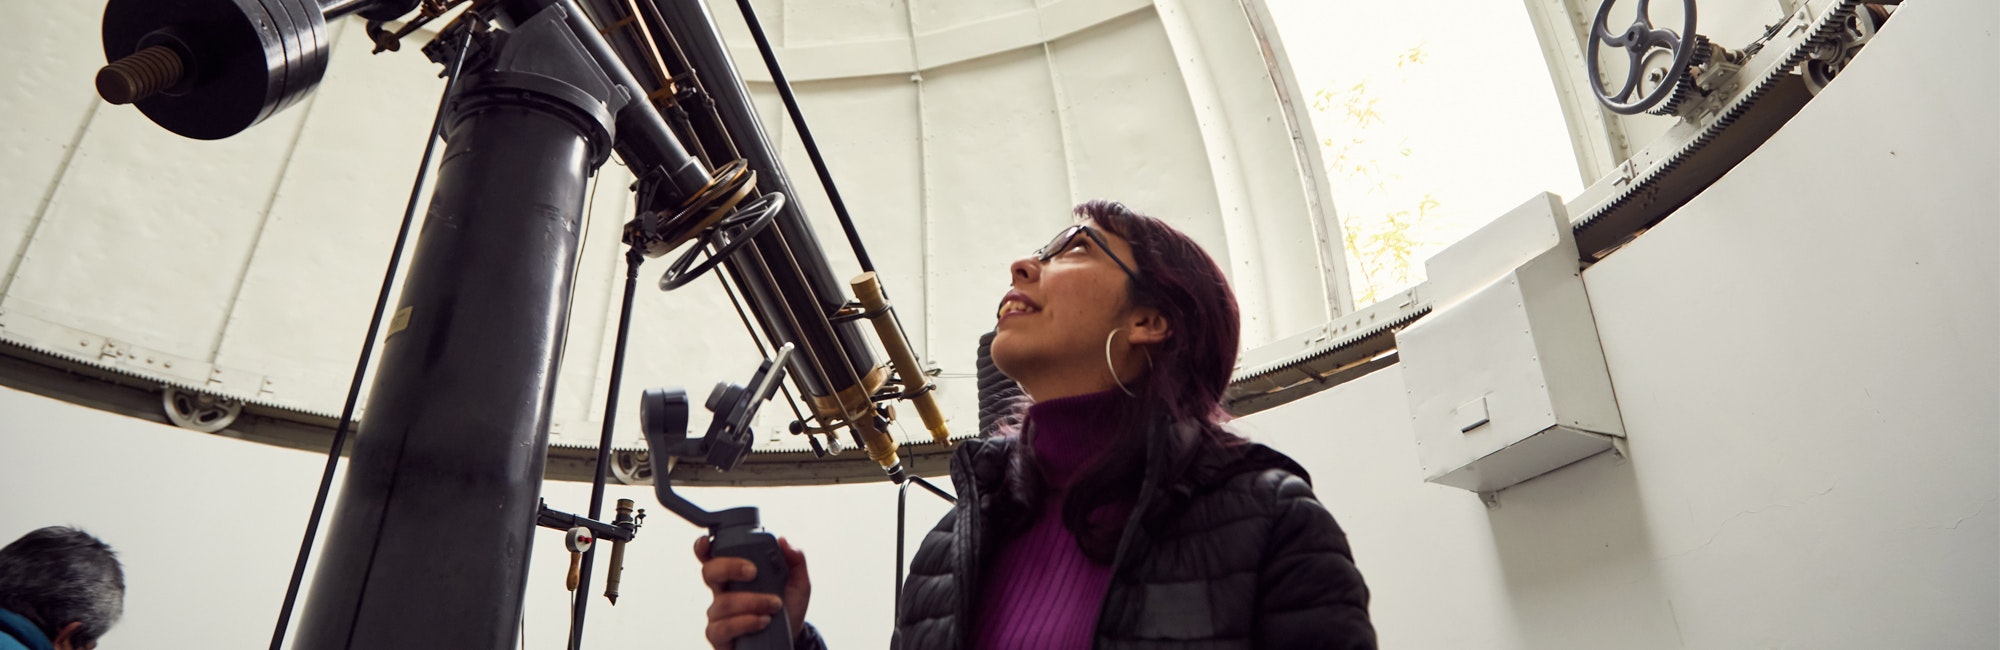 Una mujer mirando hacia arriba y sosteniendo un telescopio enorme.